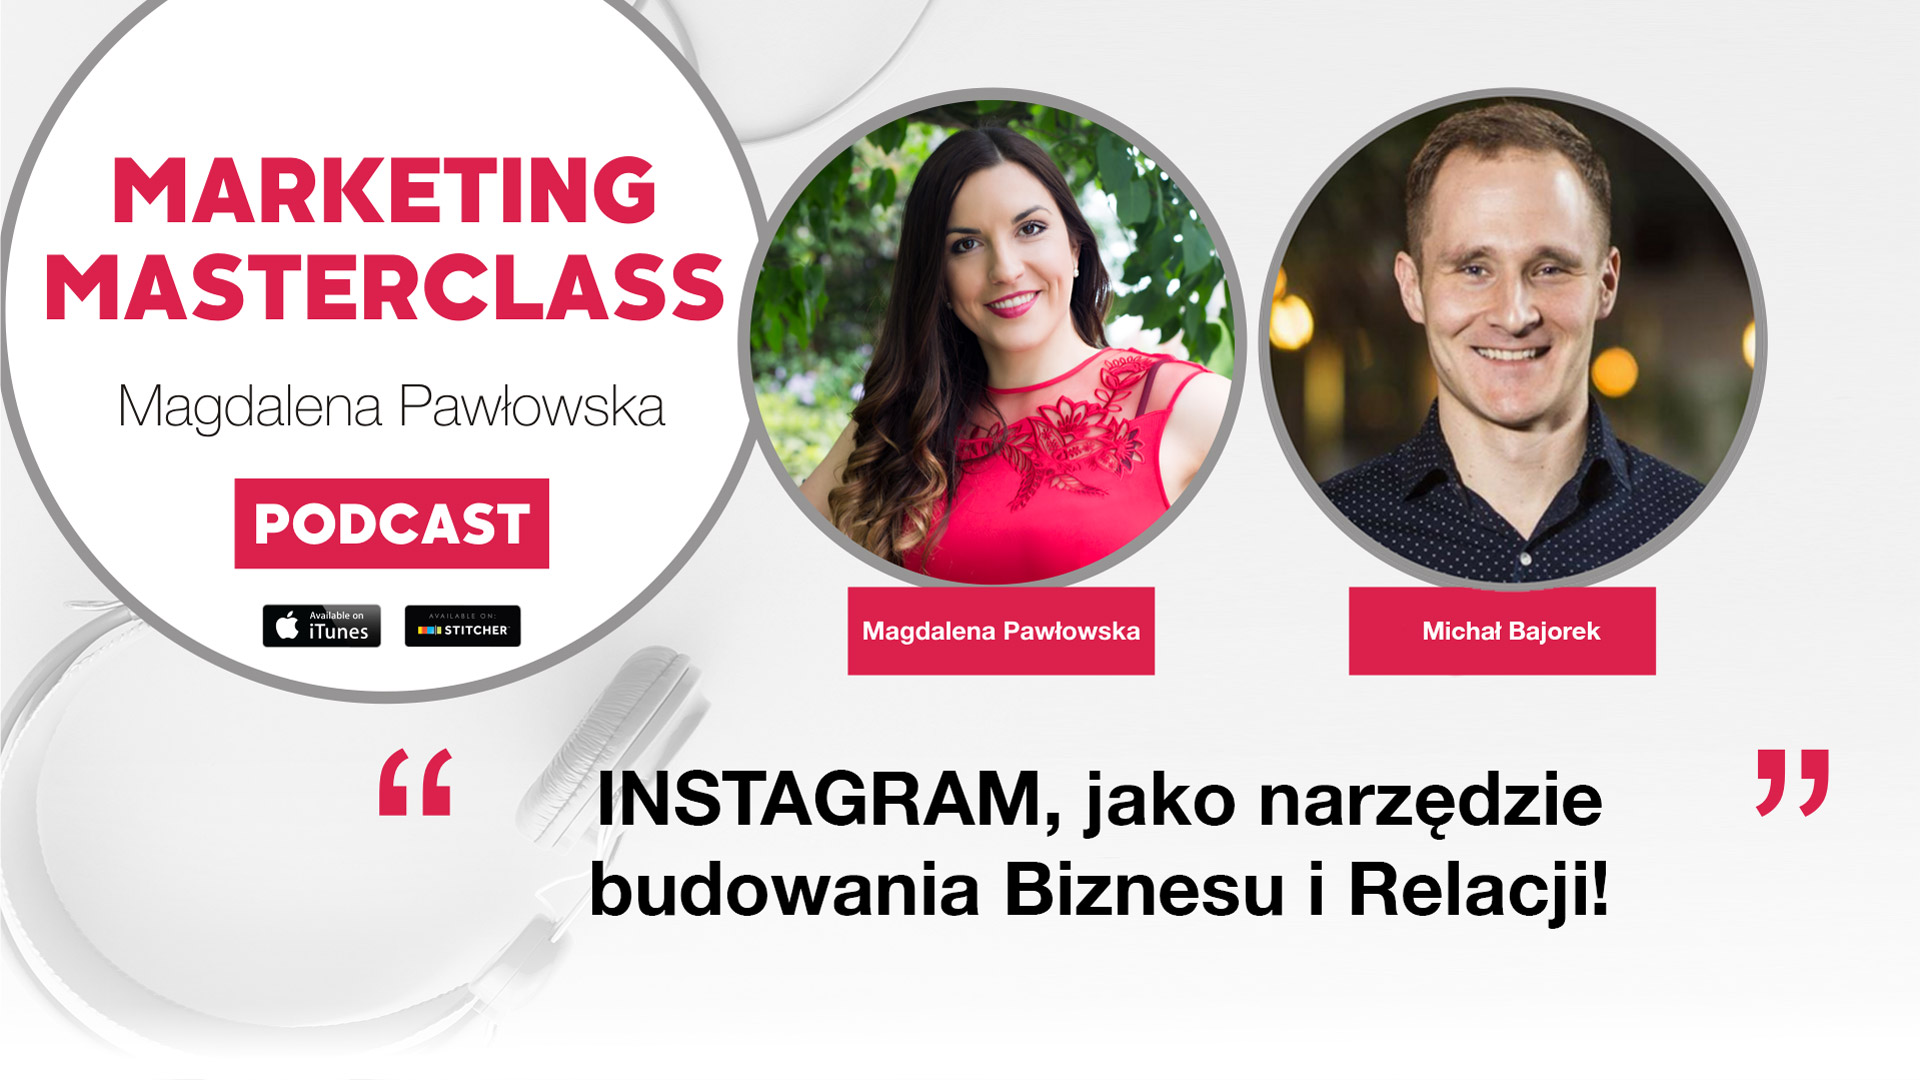 rozwój biznesu przez instagram Michał Bajorek